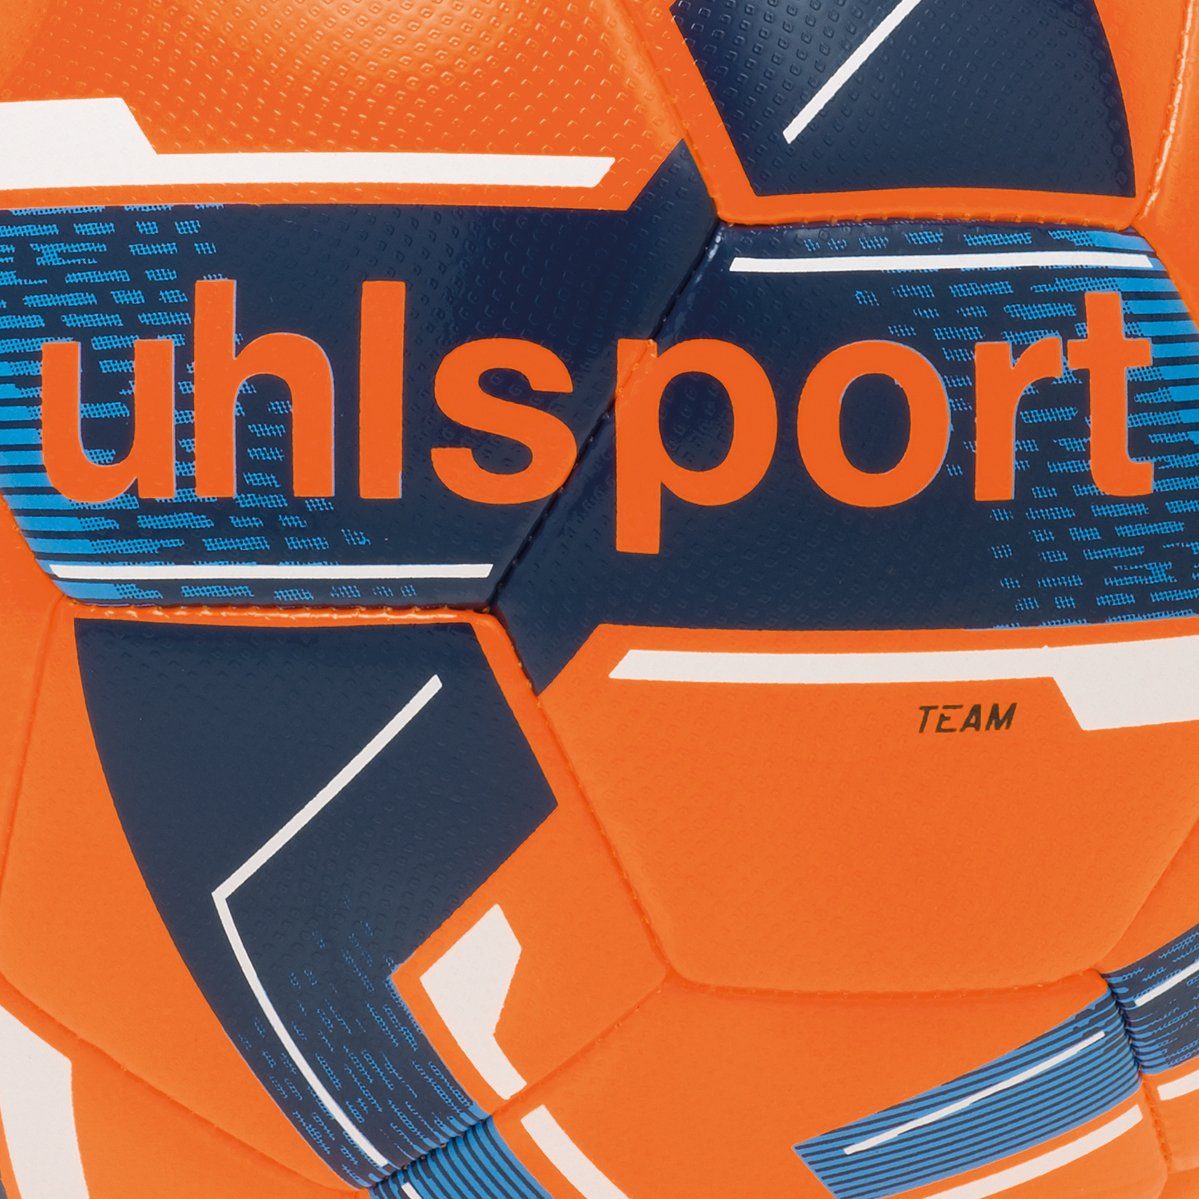 uhlsport TEAM Fußball orange/marine/weiß fluo uhlsport Fußball